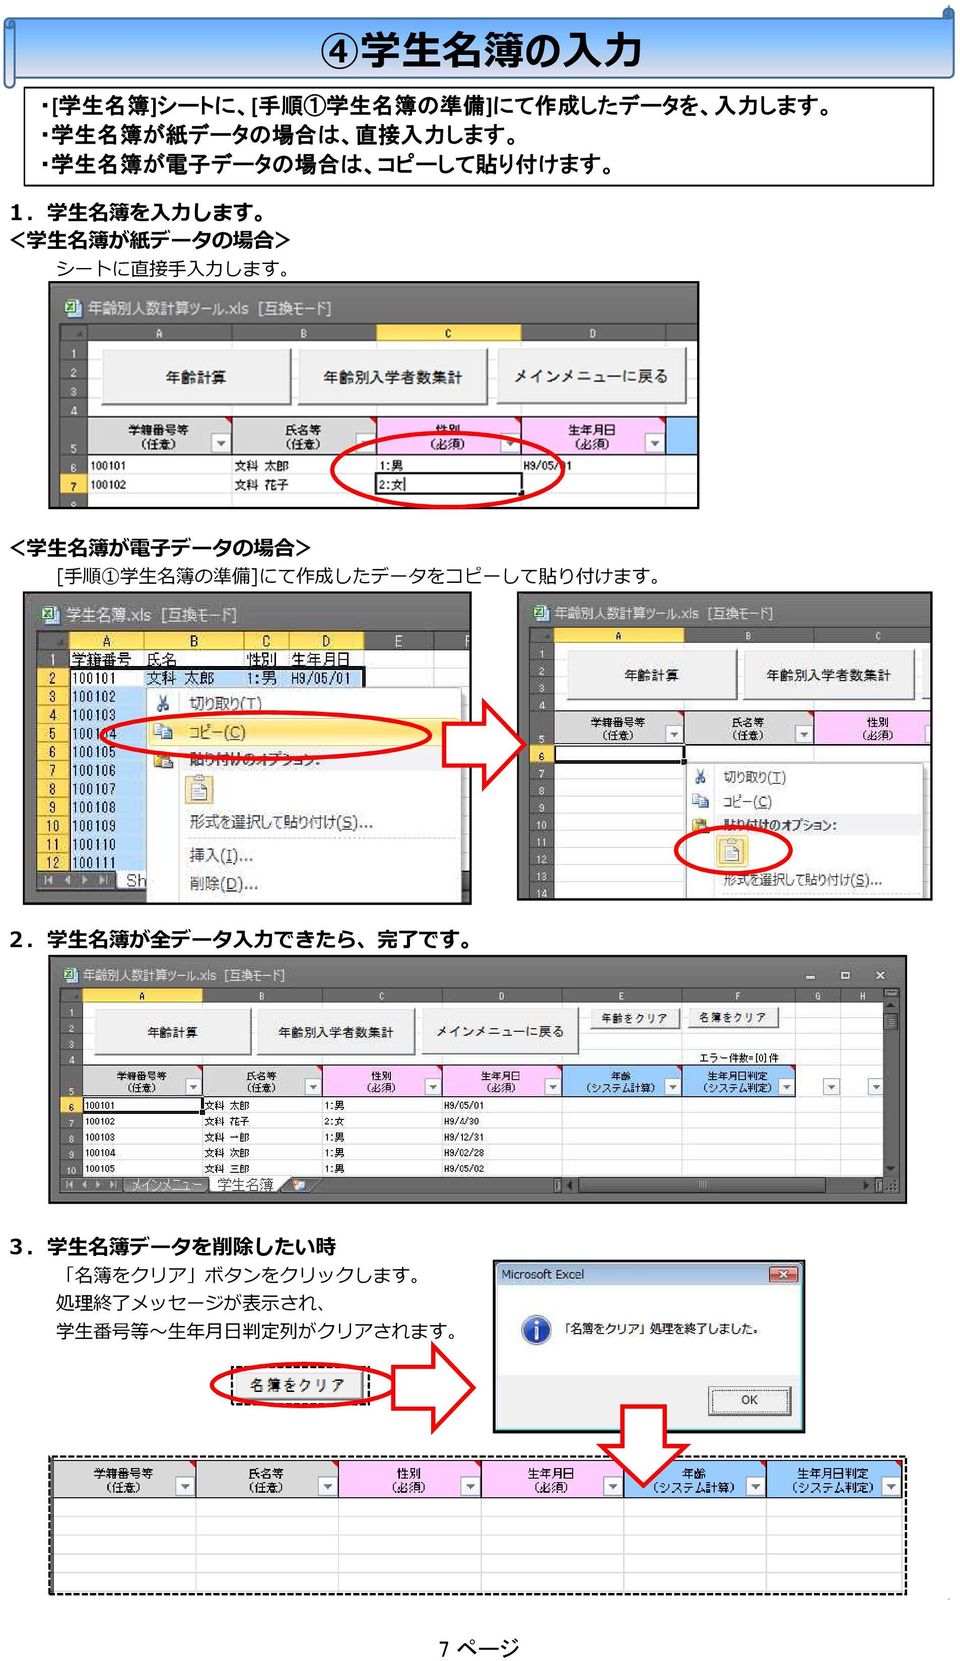 生 名 簿 が 電 子 データの 場 合 > [ 手 順 1 学 生 名 簿 の 準 備 ]にて 作 成 したデータをコピーして 貼 り 付 けます 2.